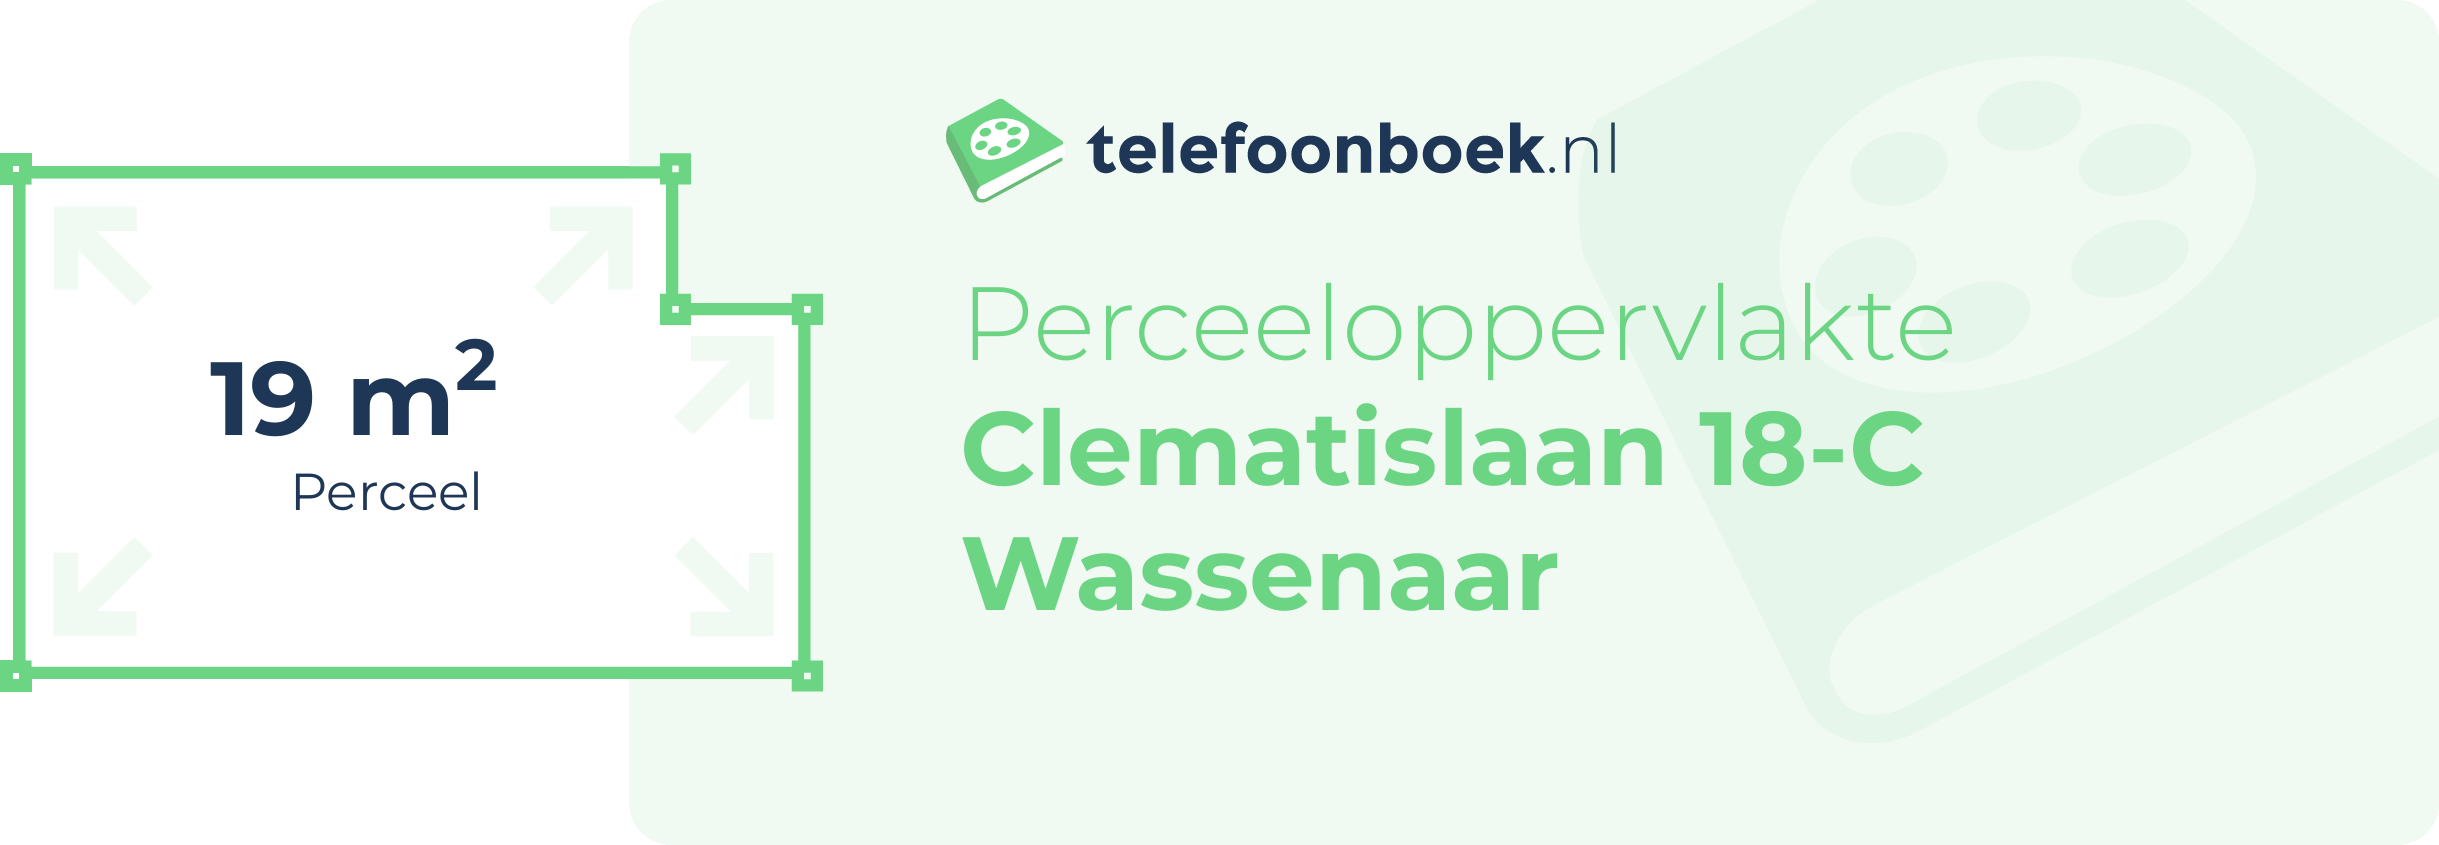 Perceeloppervlakte Clematislaan 18-C Wassenaar